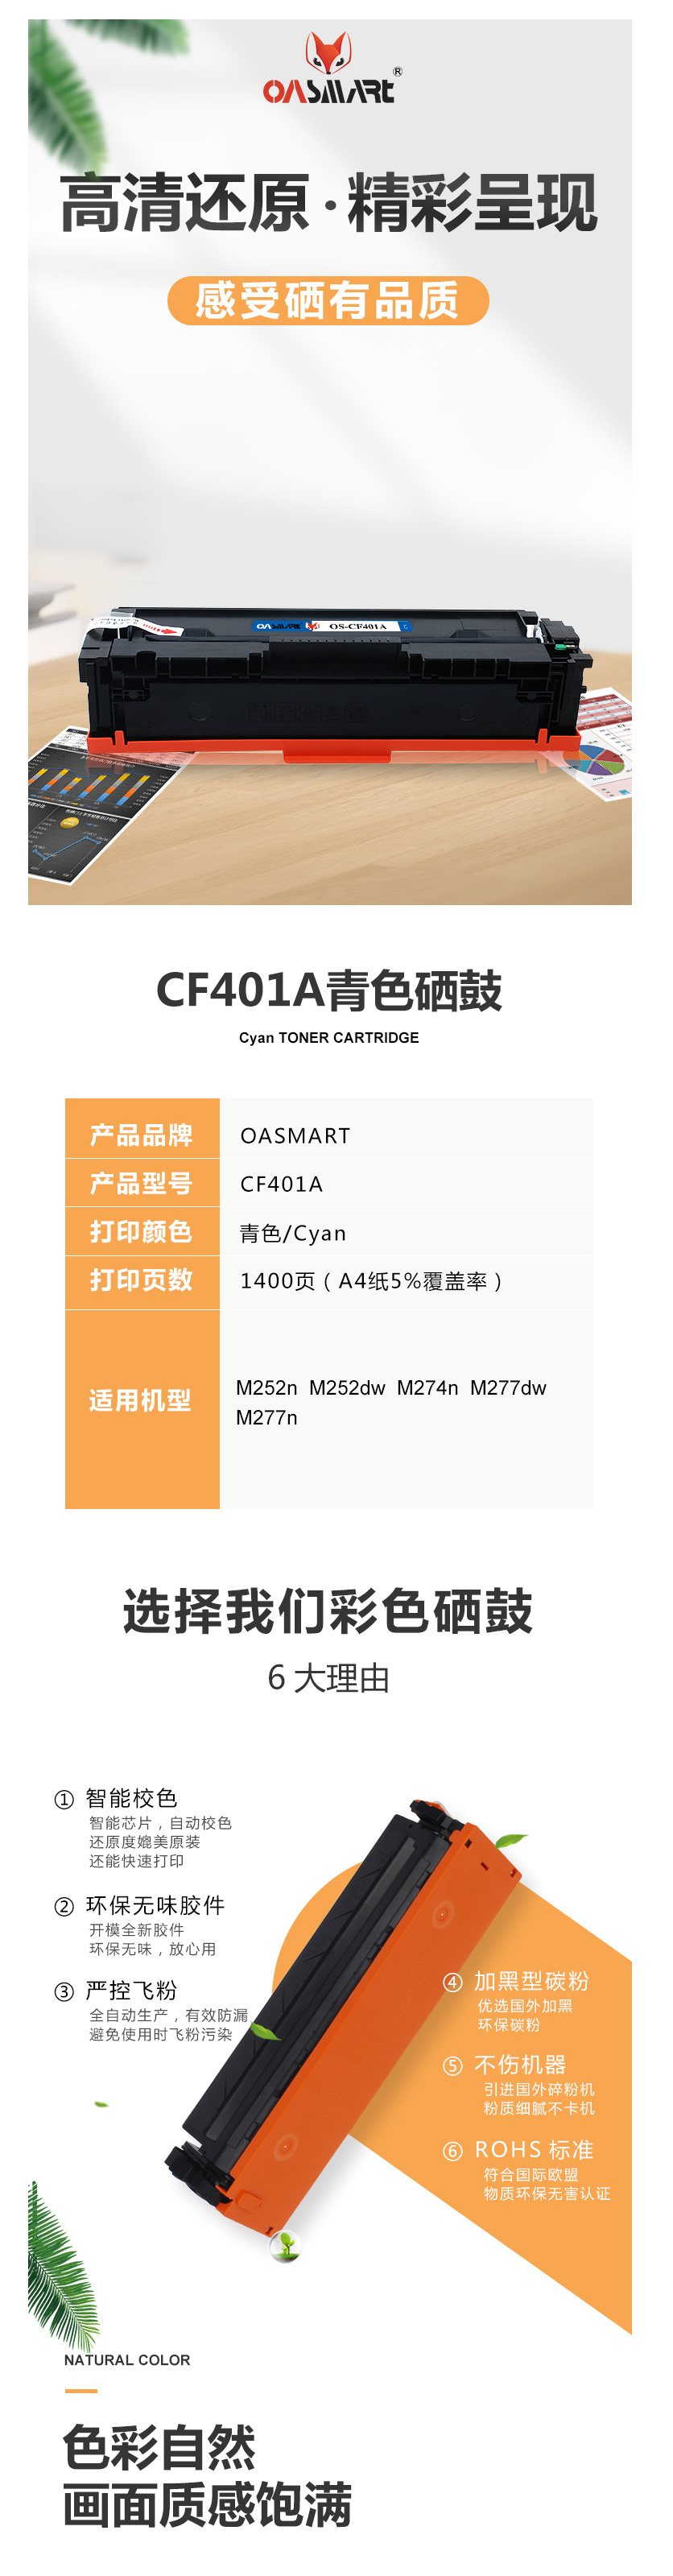 FireShot Capture 611 - 【OASMARTCF401A】OASMART（欧司特）CF401A青色硒_ - https___item.jd.com_100016360852.html.png